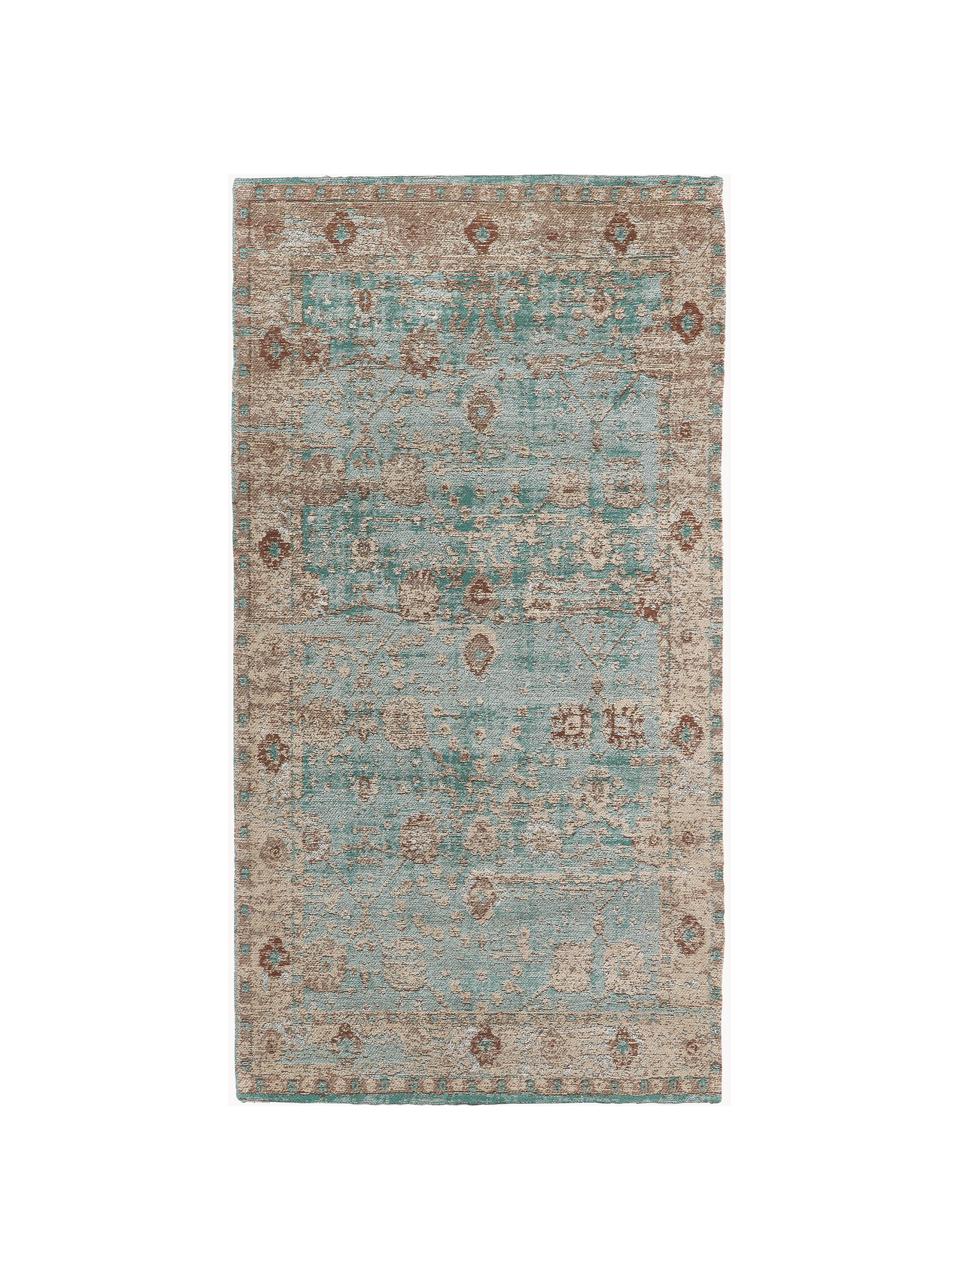 Ručne tkaný ženilkový koberec Rimini, Tyrkysovozelená, béžová, hnedá, Š 160 x D 230 cm (veľkosť M)